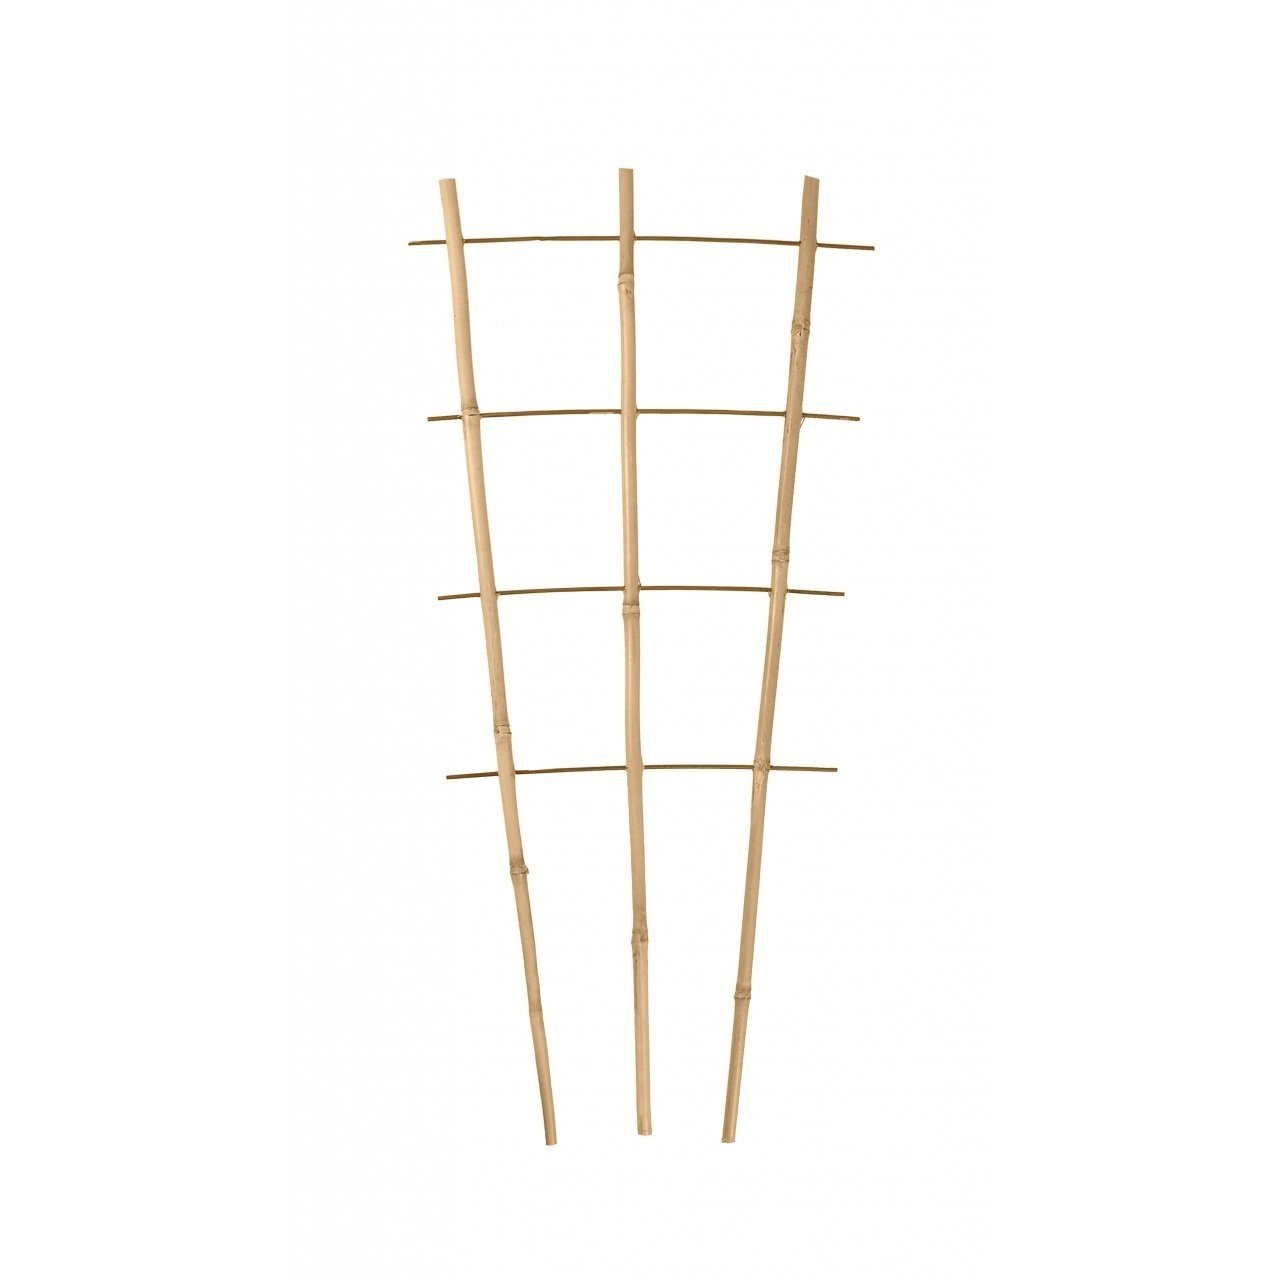 Bambukinės kopetėlės PB3.60, 3 kojų, 4 pakopų, 60 cm